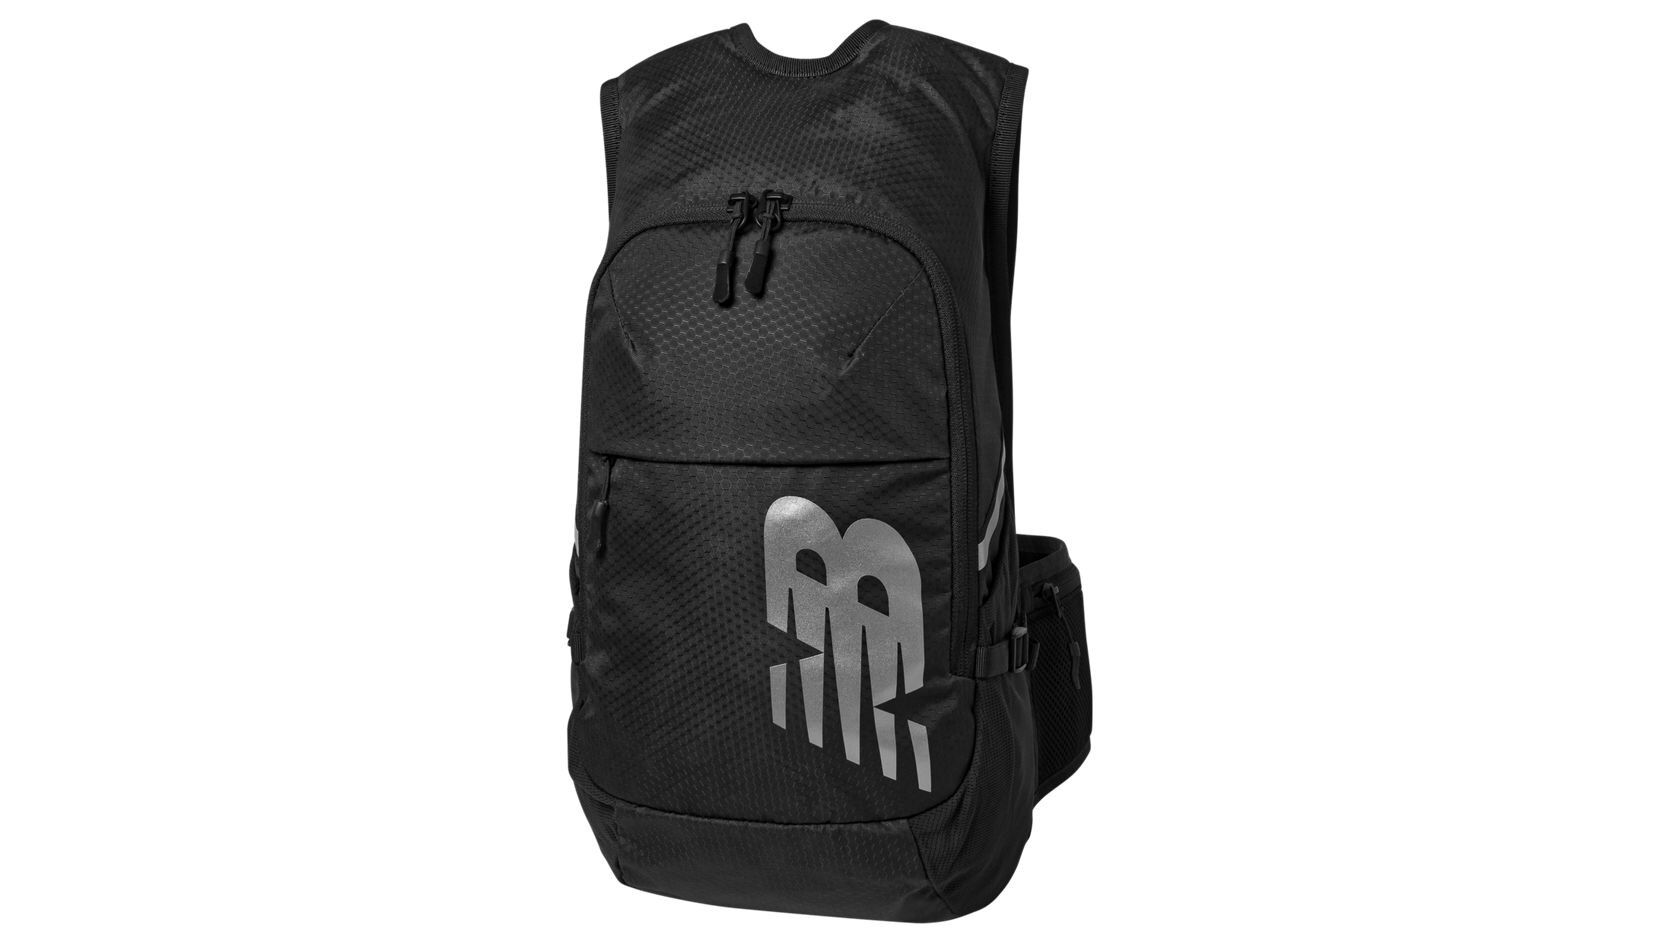 Backpack NB IMPACT RUNNING BACKPACK (черный) - изображение №1